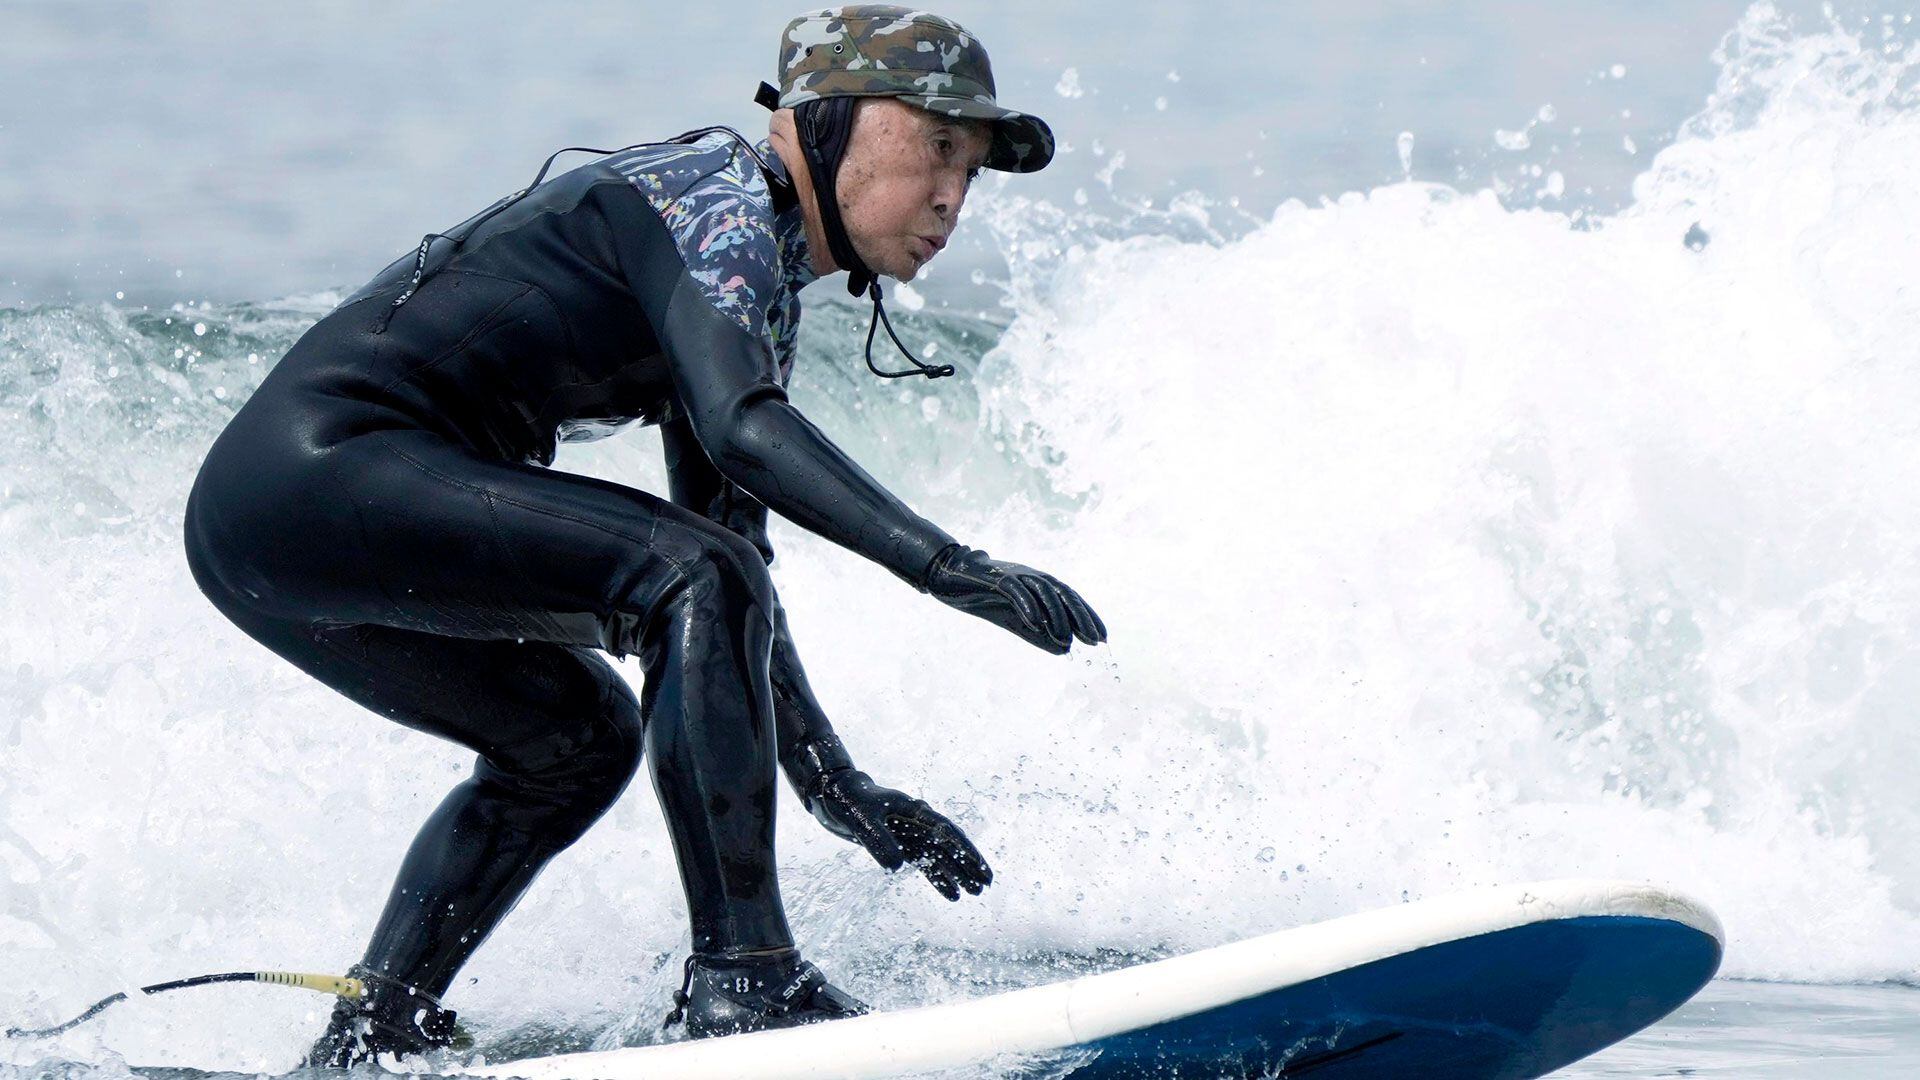 La historia de Sano Seiichi, surfista de 90 años